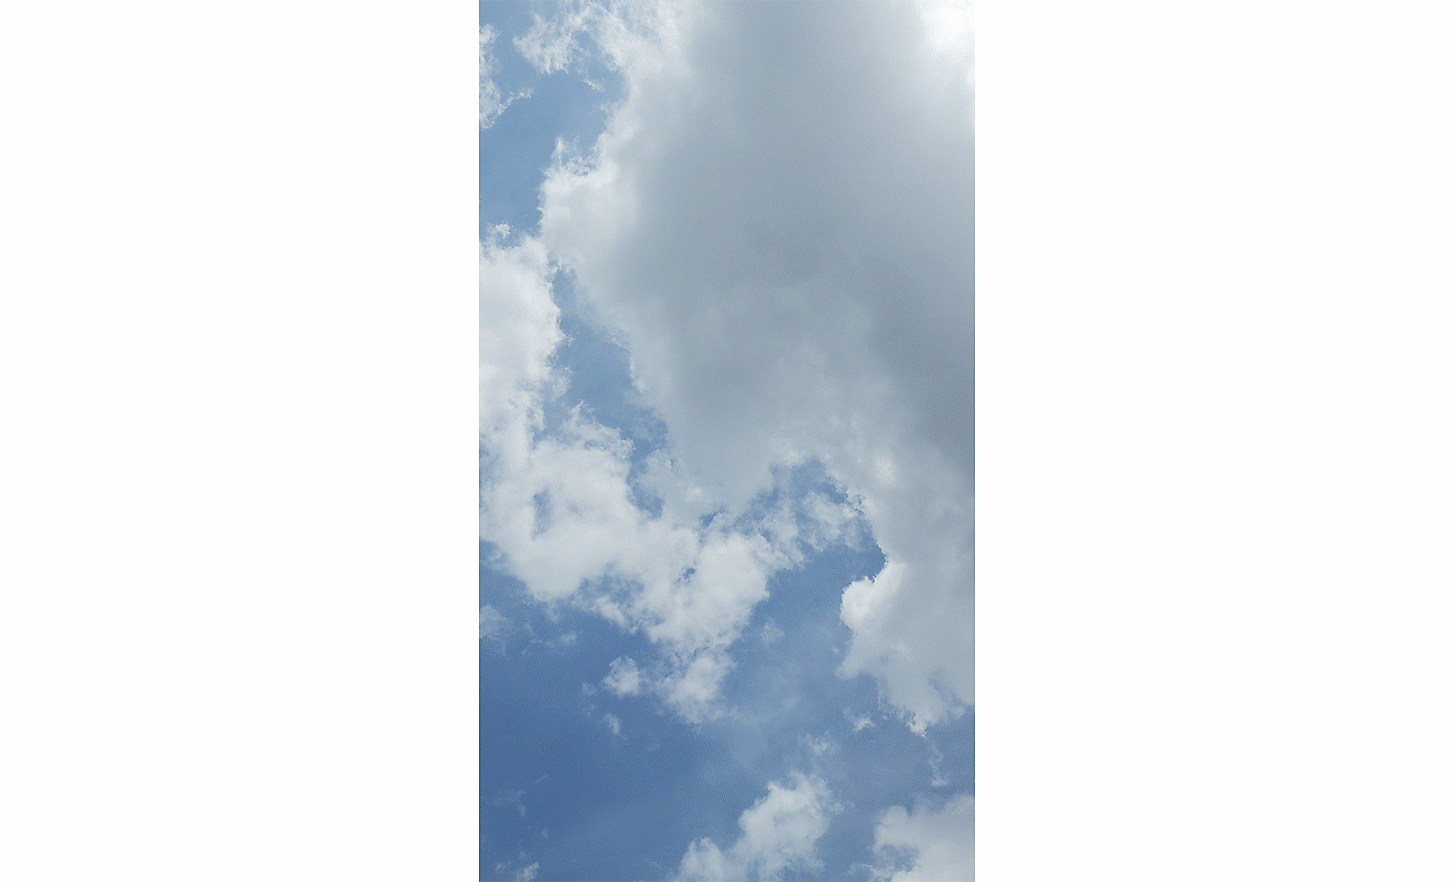 Image de nuages dans un ciel bleu